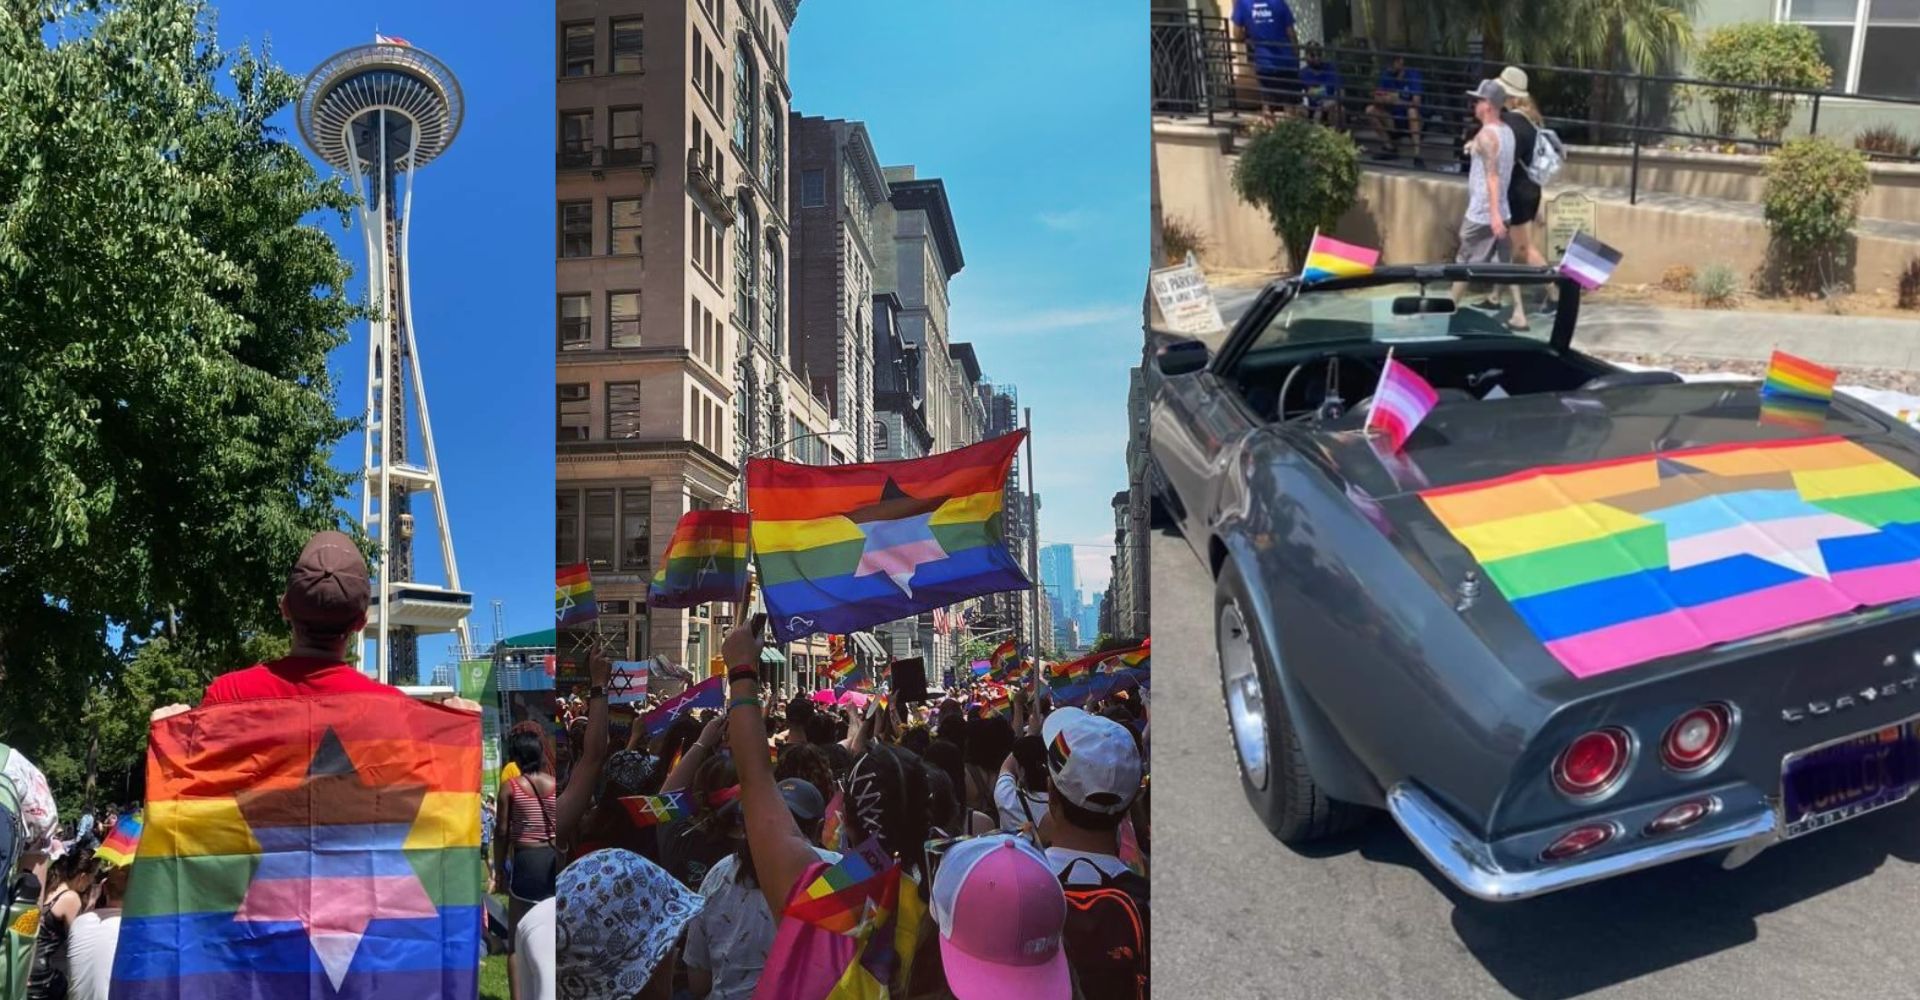 Jewish Inclusive Pride Flag